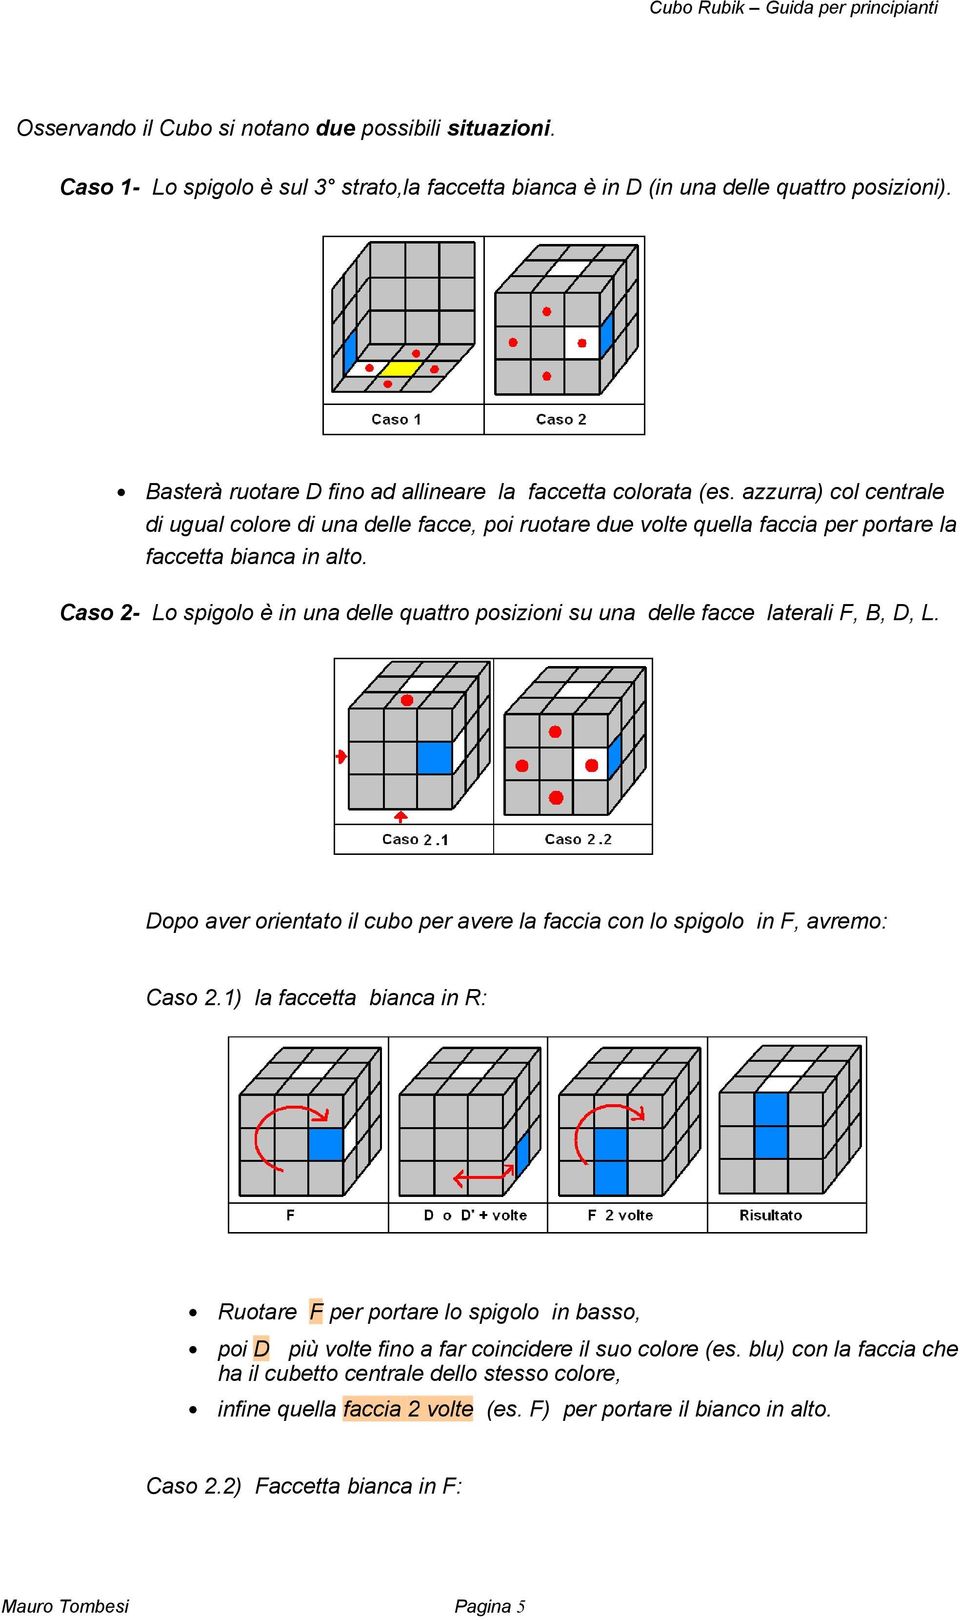 Caso 2- Lo spigolo è in una delle quattro posizioni su una delle facce laterali F, B, D, L. Dopo aver orientato il cubo per avere la faccia con lo spigolo in F, avremo: Caso 2.